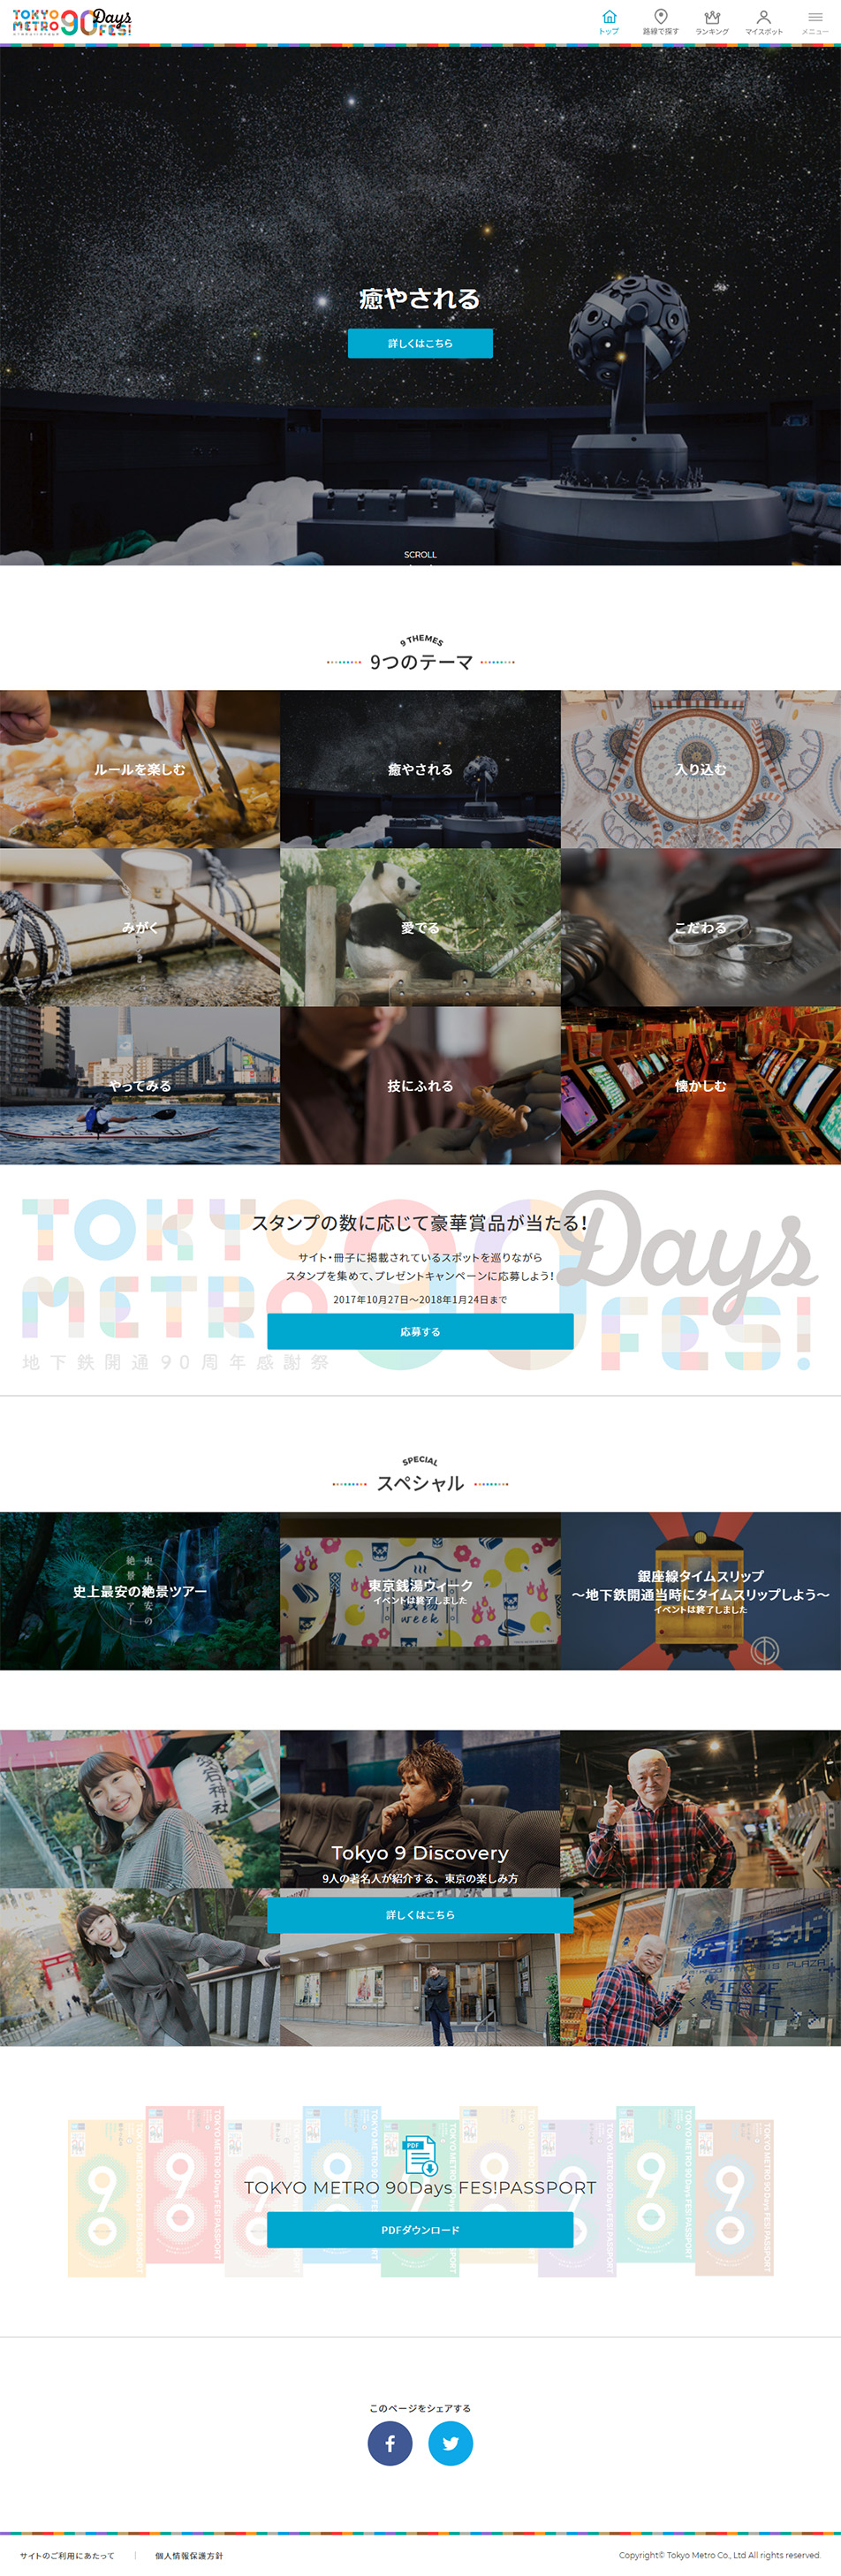 TOKYO METRO 90 Days FES!_pc_1